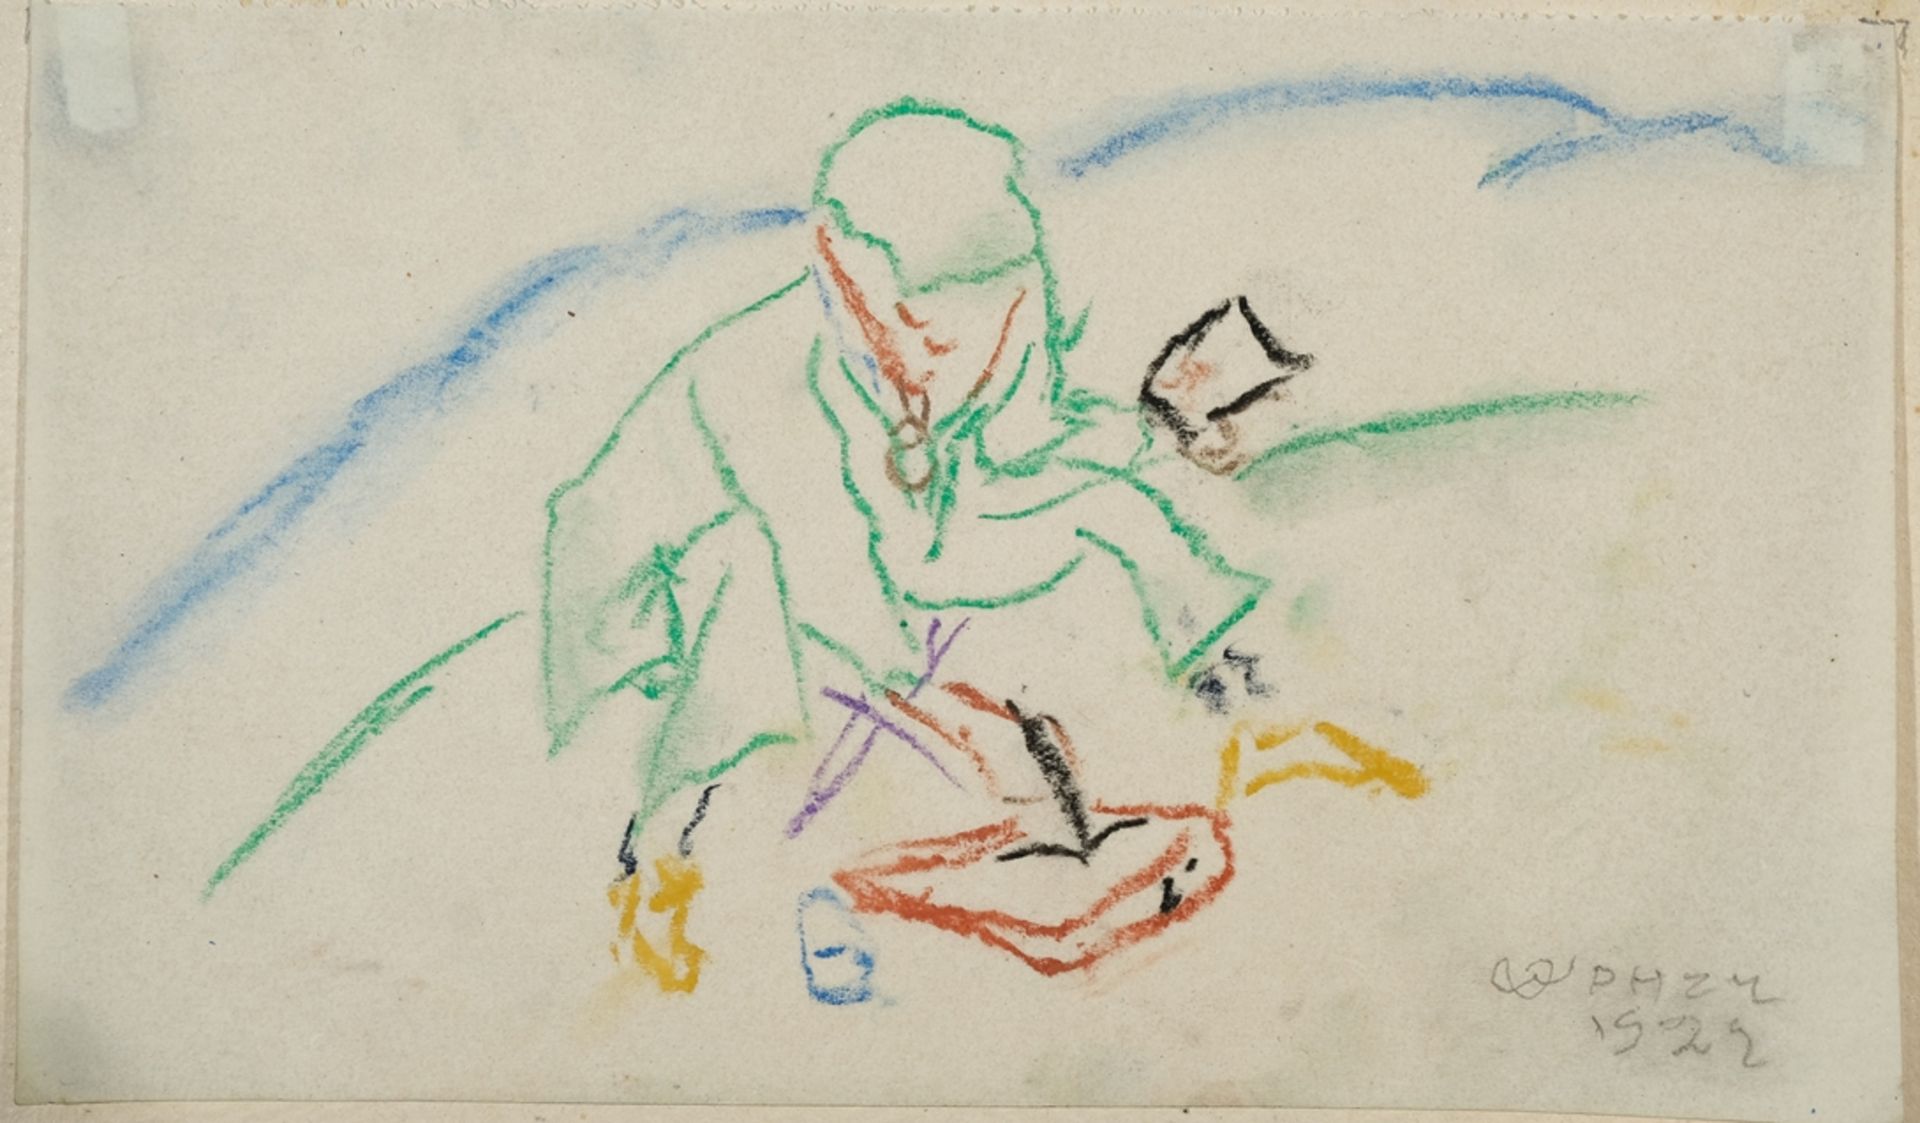 Ophey, Walter Hugo (1882-1930) Zeichnender Künstler, 1922, Farbkreide auf Papier. 